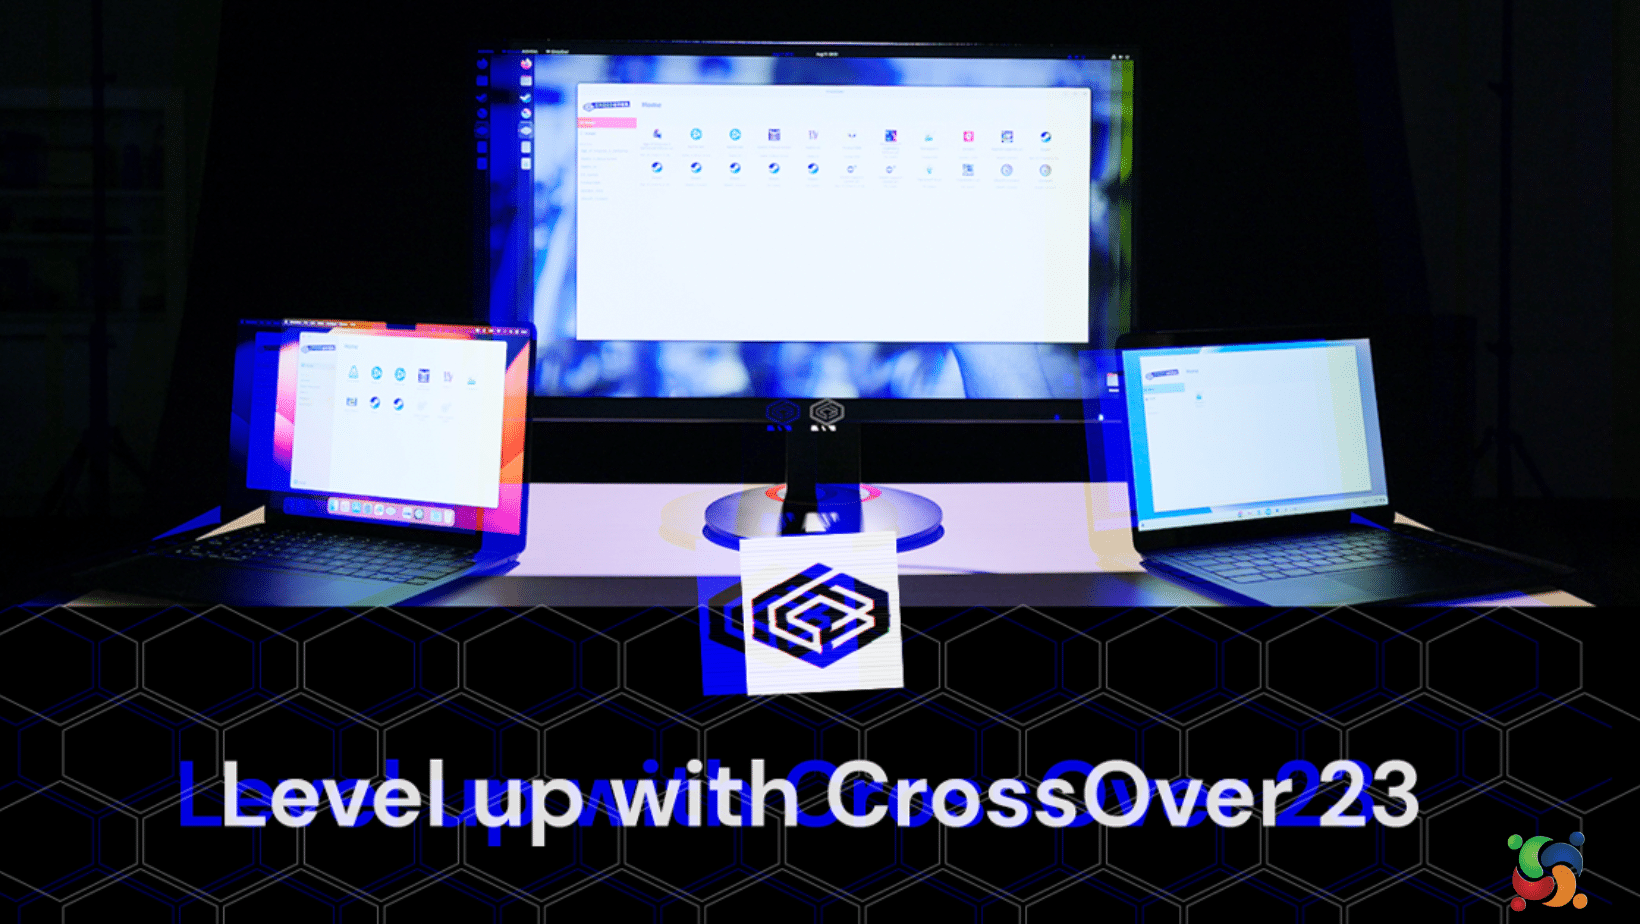 CrossOver 23 habilita o aplicativo EA no Linux e muitas correções